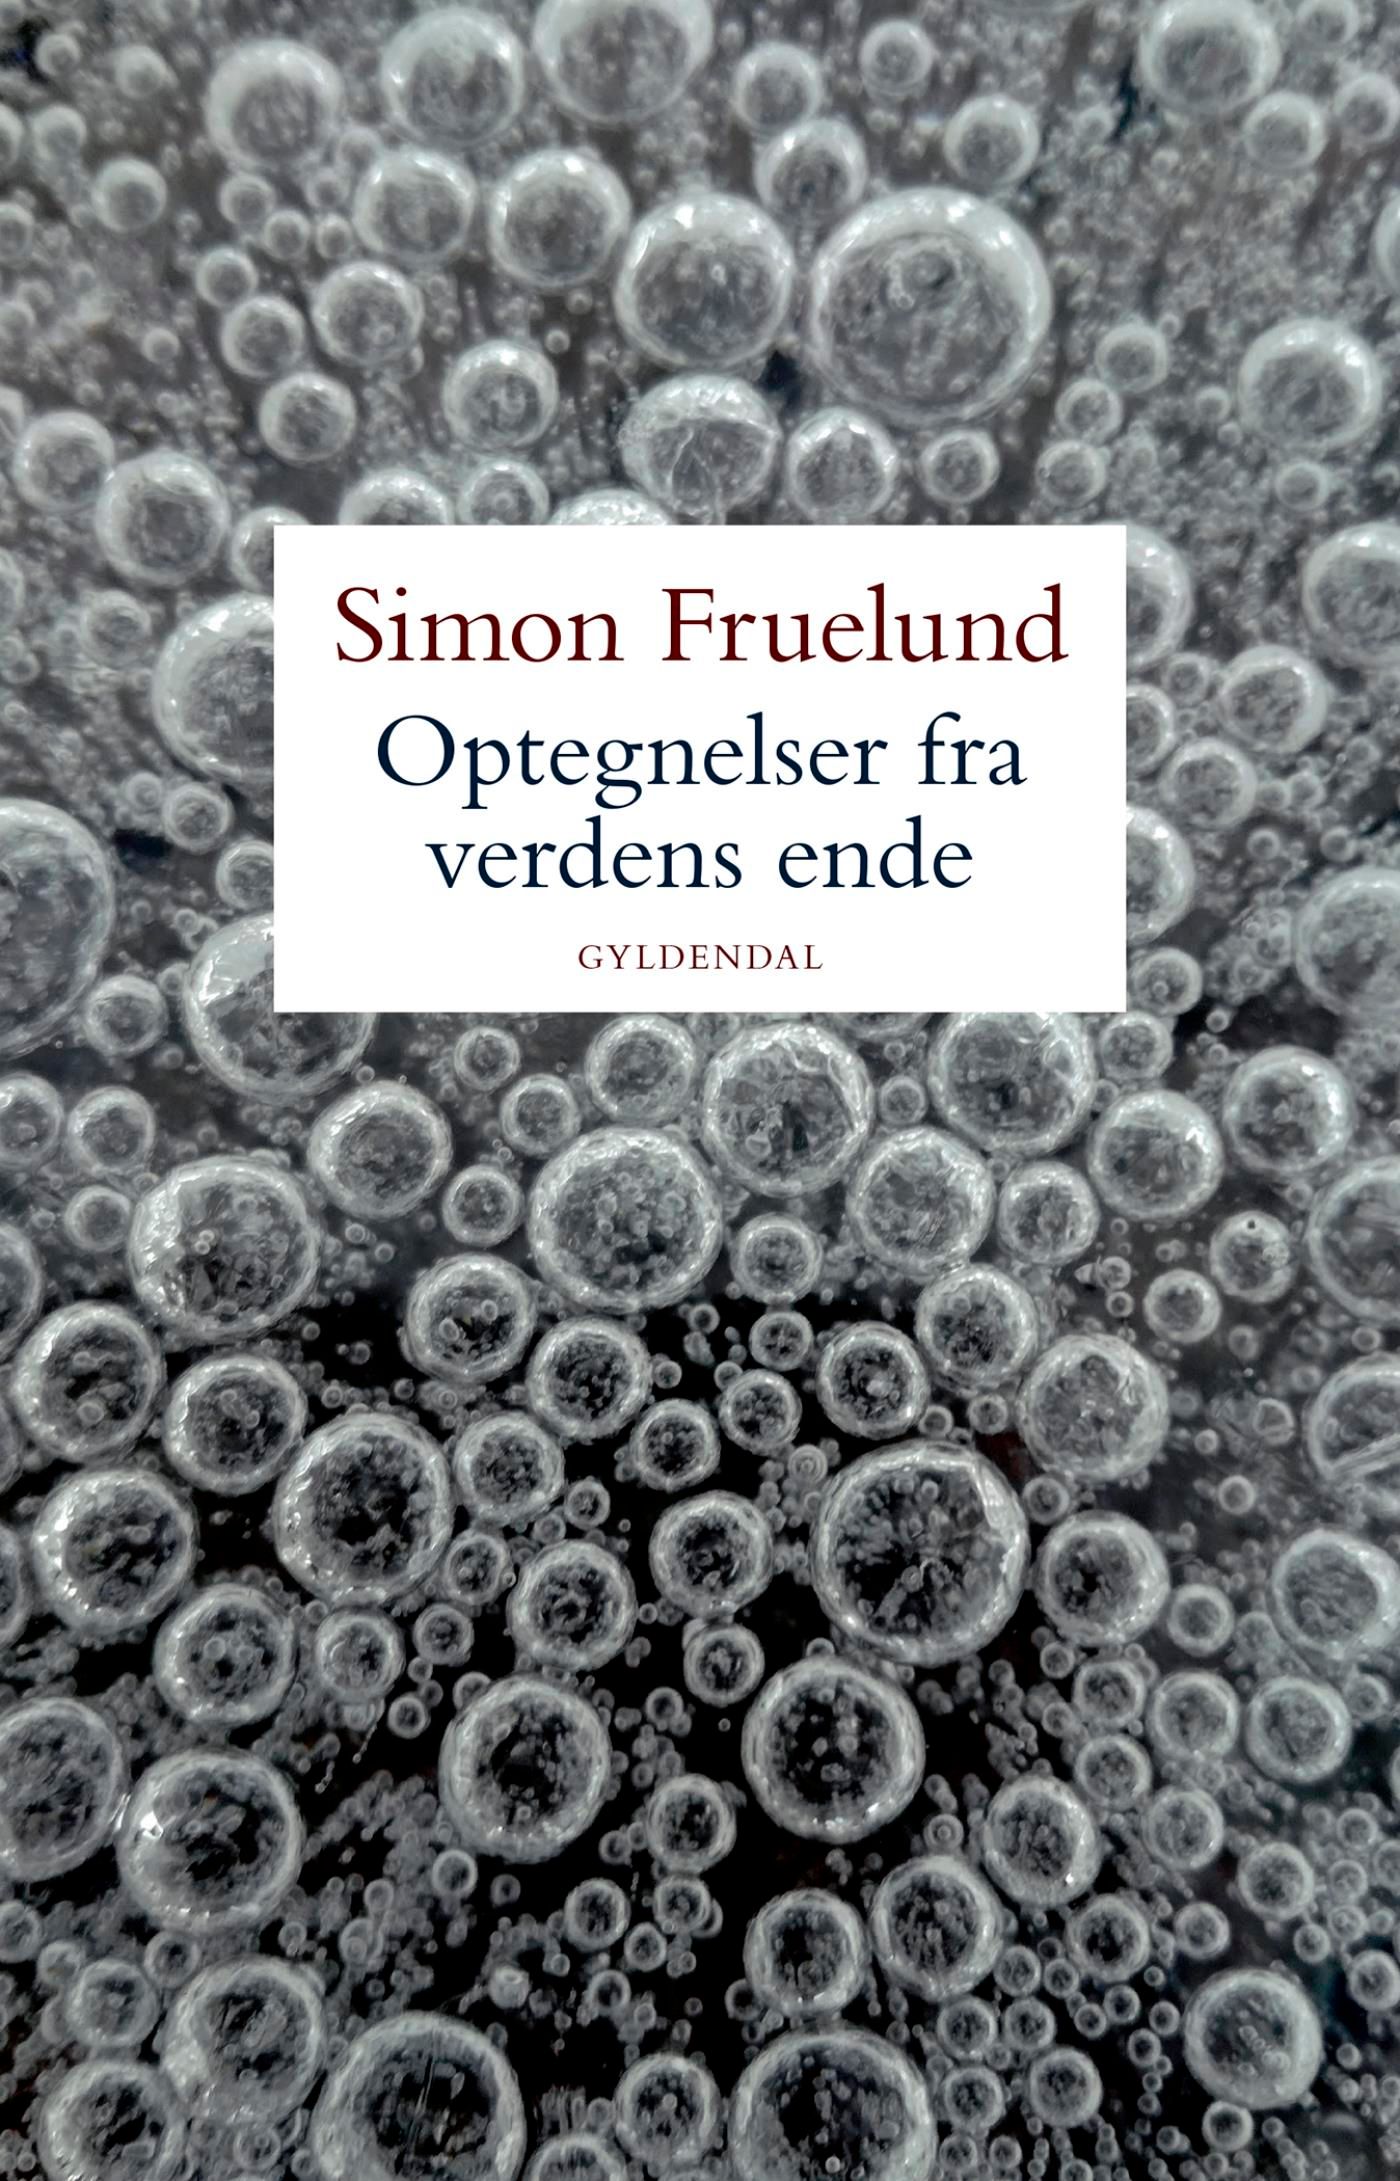 Optegnelser fra verdens ende, eBook by Simon Fruelund